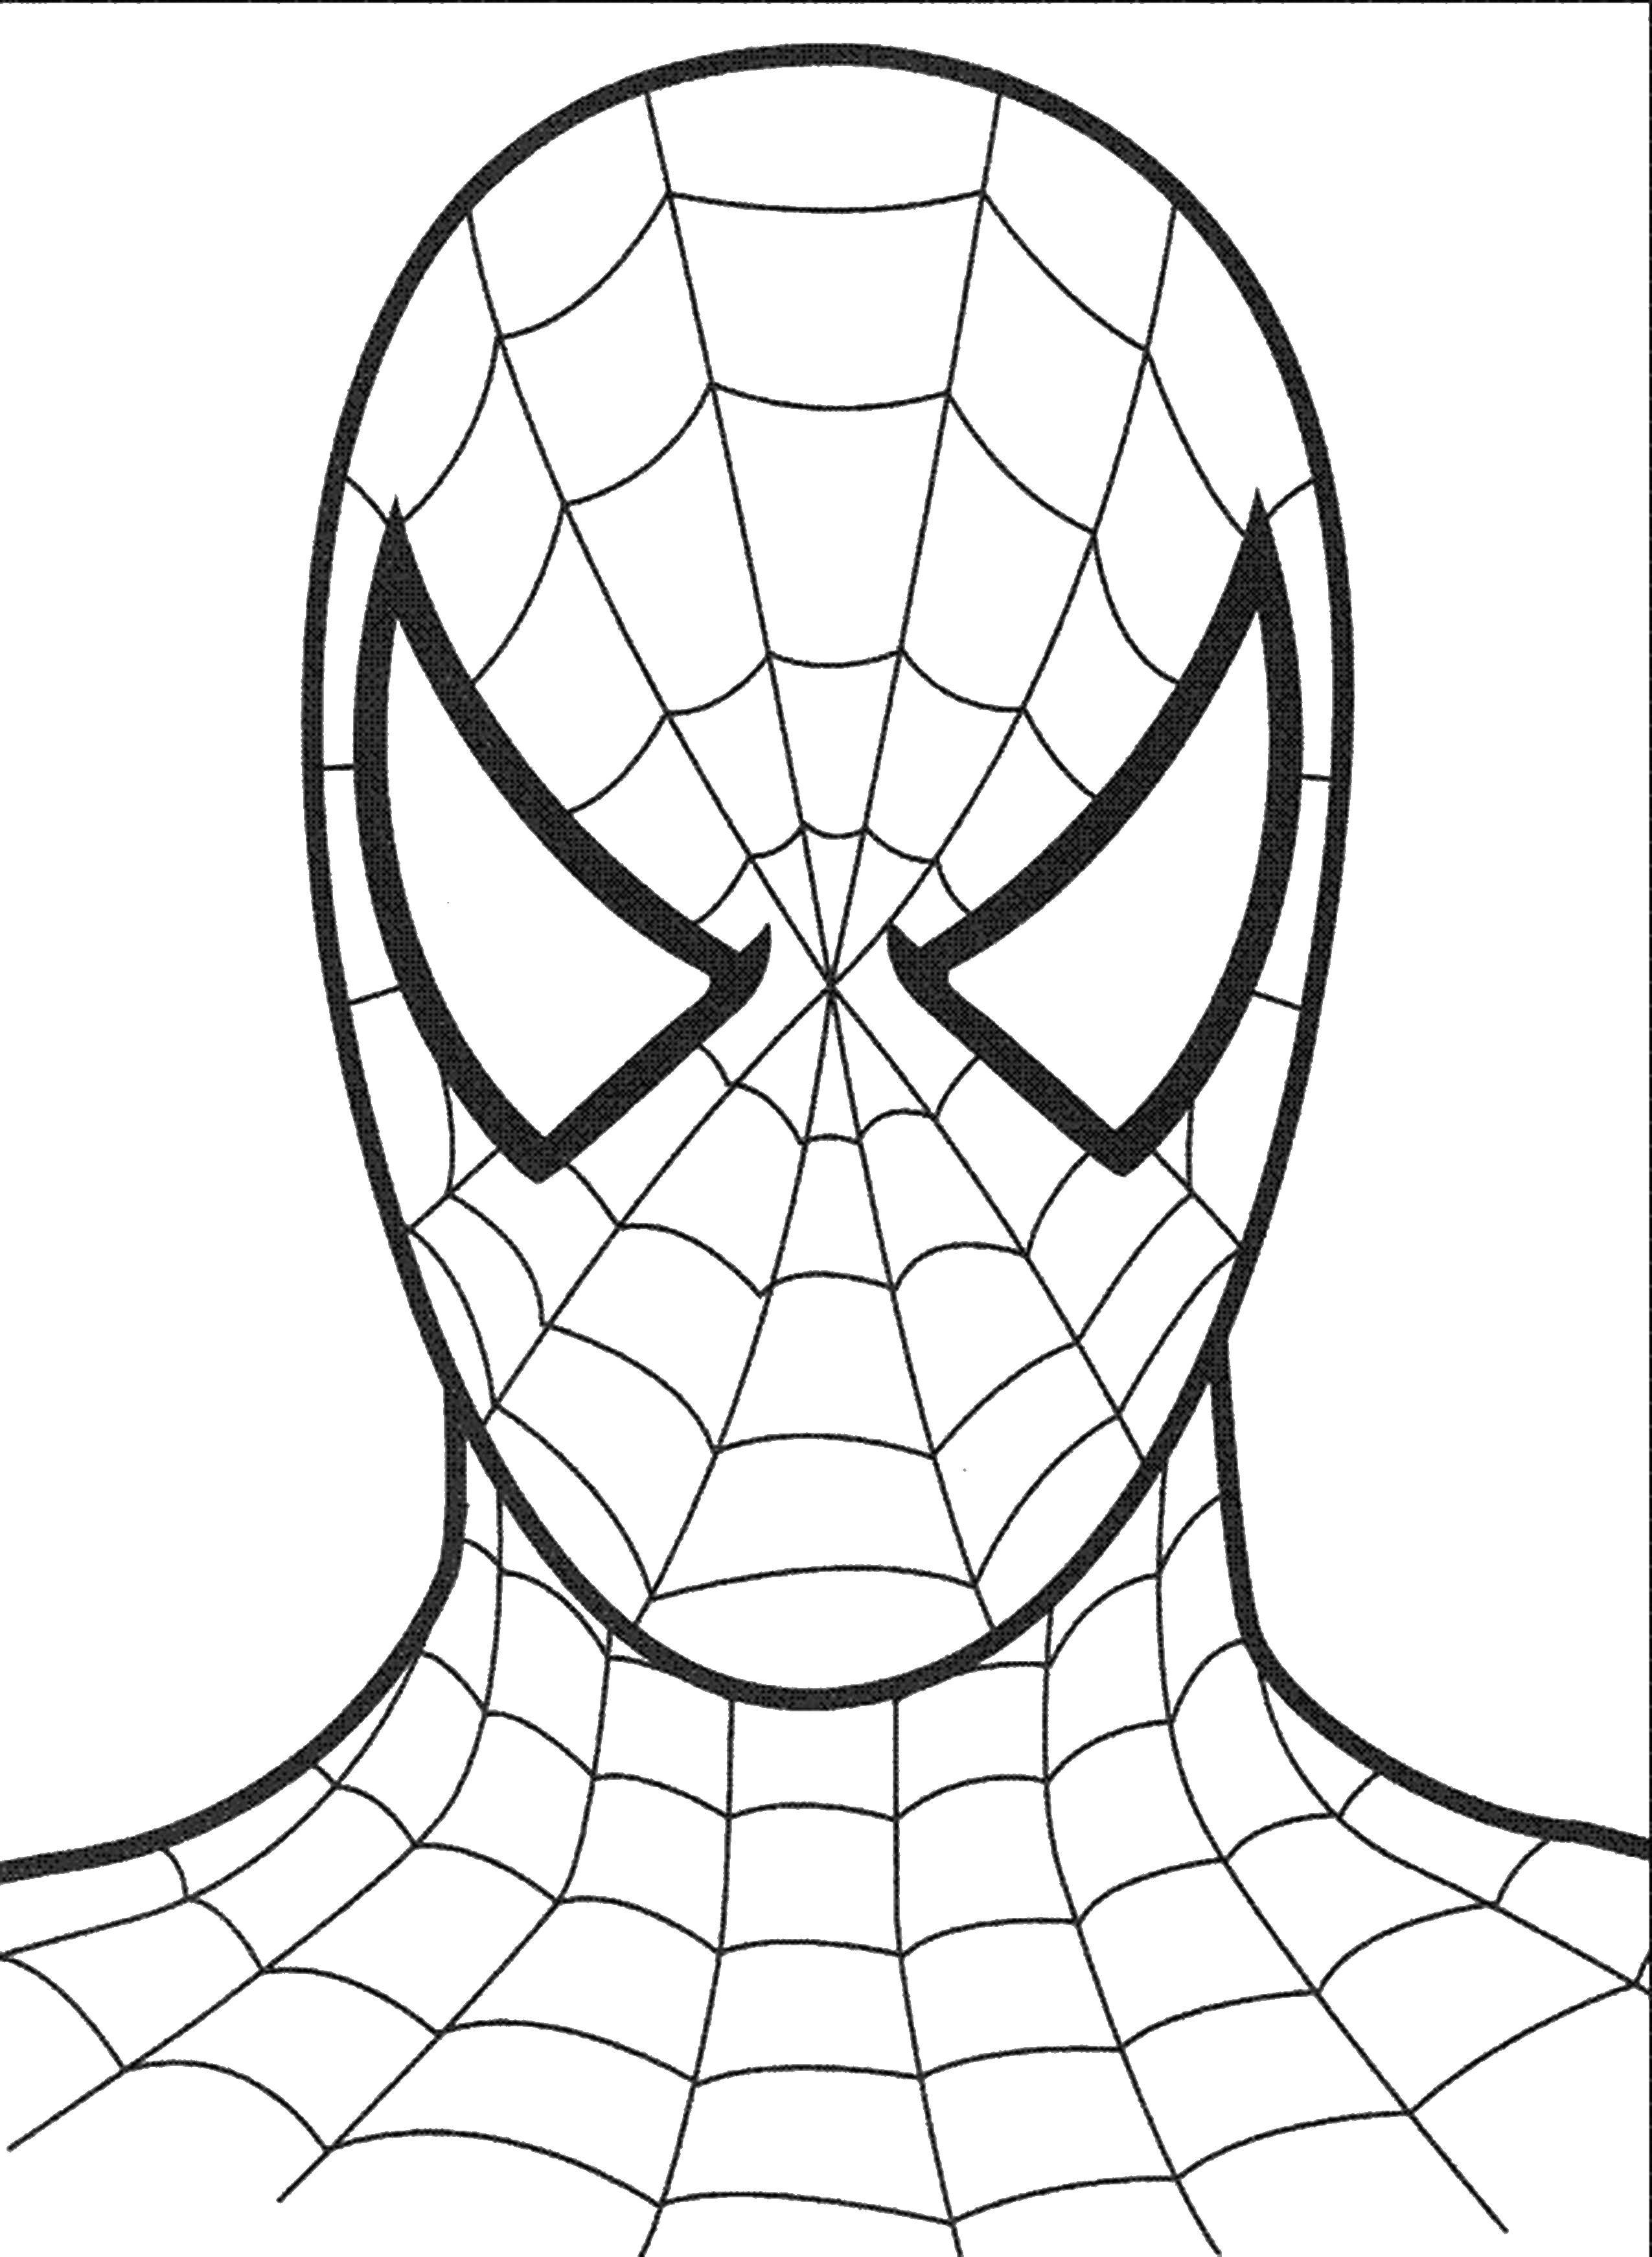 Название: Раскраска Человек паук. Категория: Комиксы. Теги: Комиксы, Спайдермэн, Человек Паук.